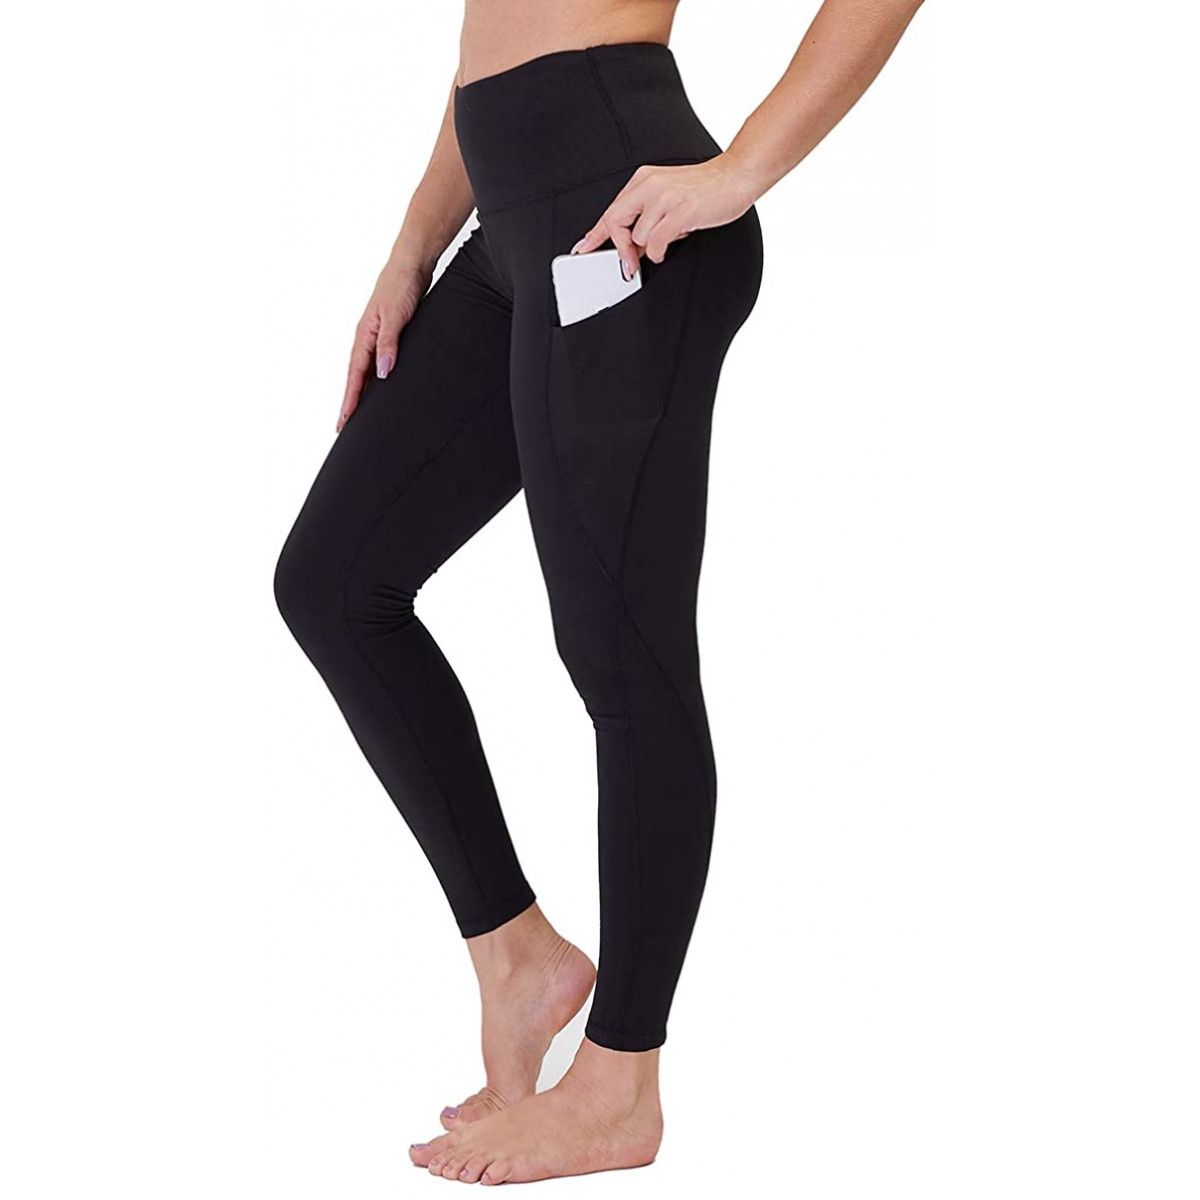 GAYHAY High Waisted Leggings w Pockets for Women - Soft Tummy Control  Stretch XS